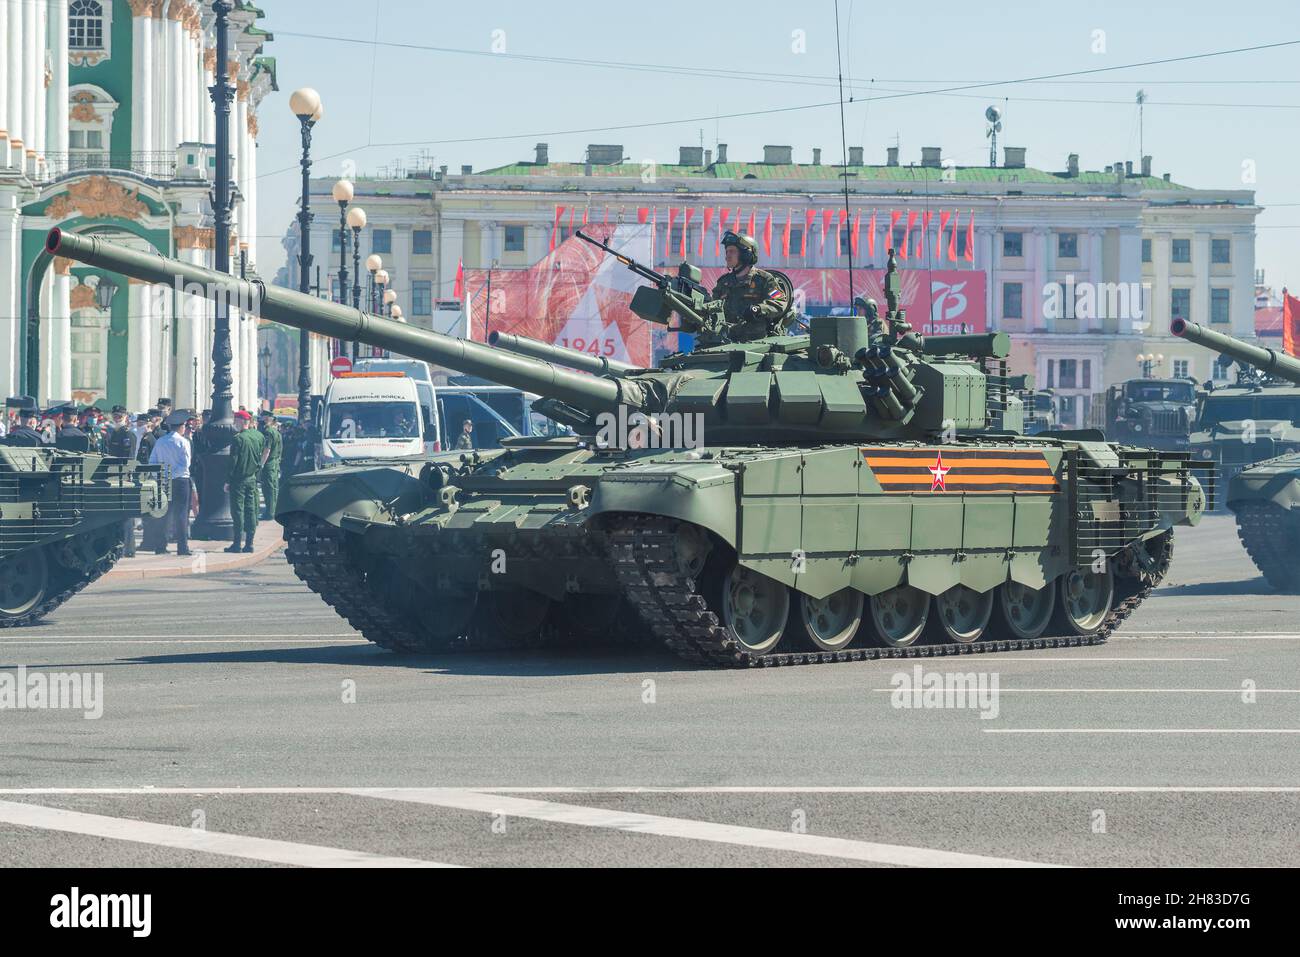 ST.PETERSBOURG, RUSSIE - 20 JUIN 2020 : gros plan du char russe T-72B3.Répétition de la parade militaire en l'honneur du jour de la victoire Banque D'Images